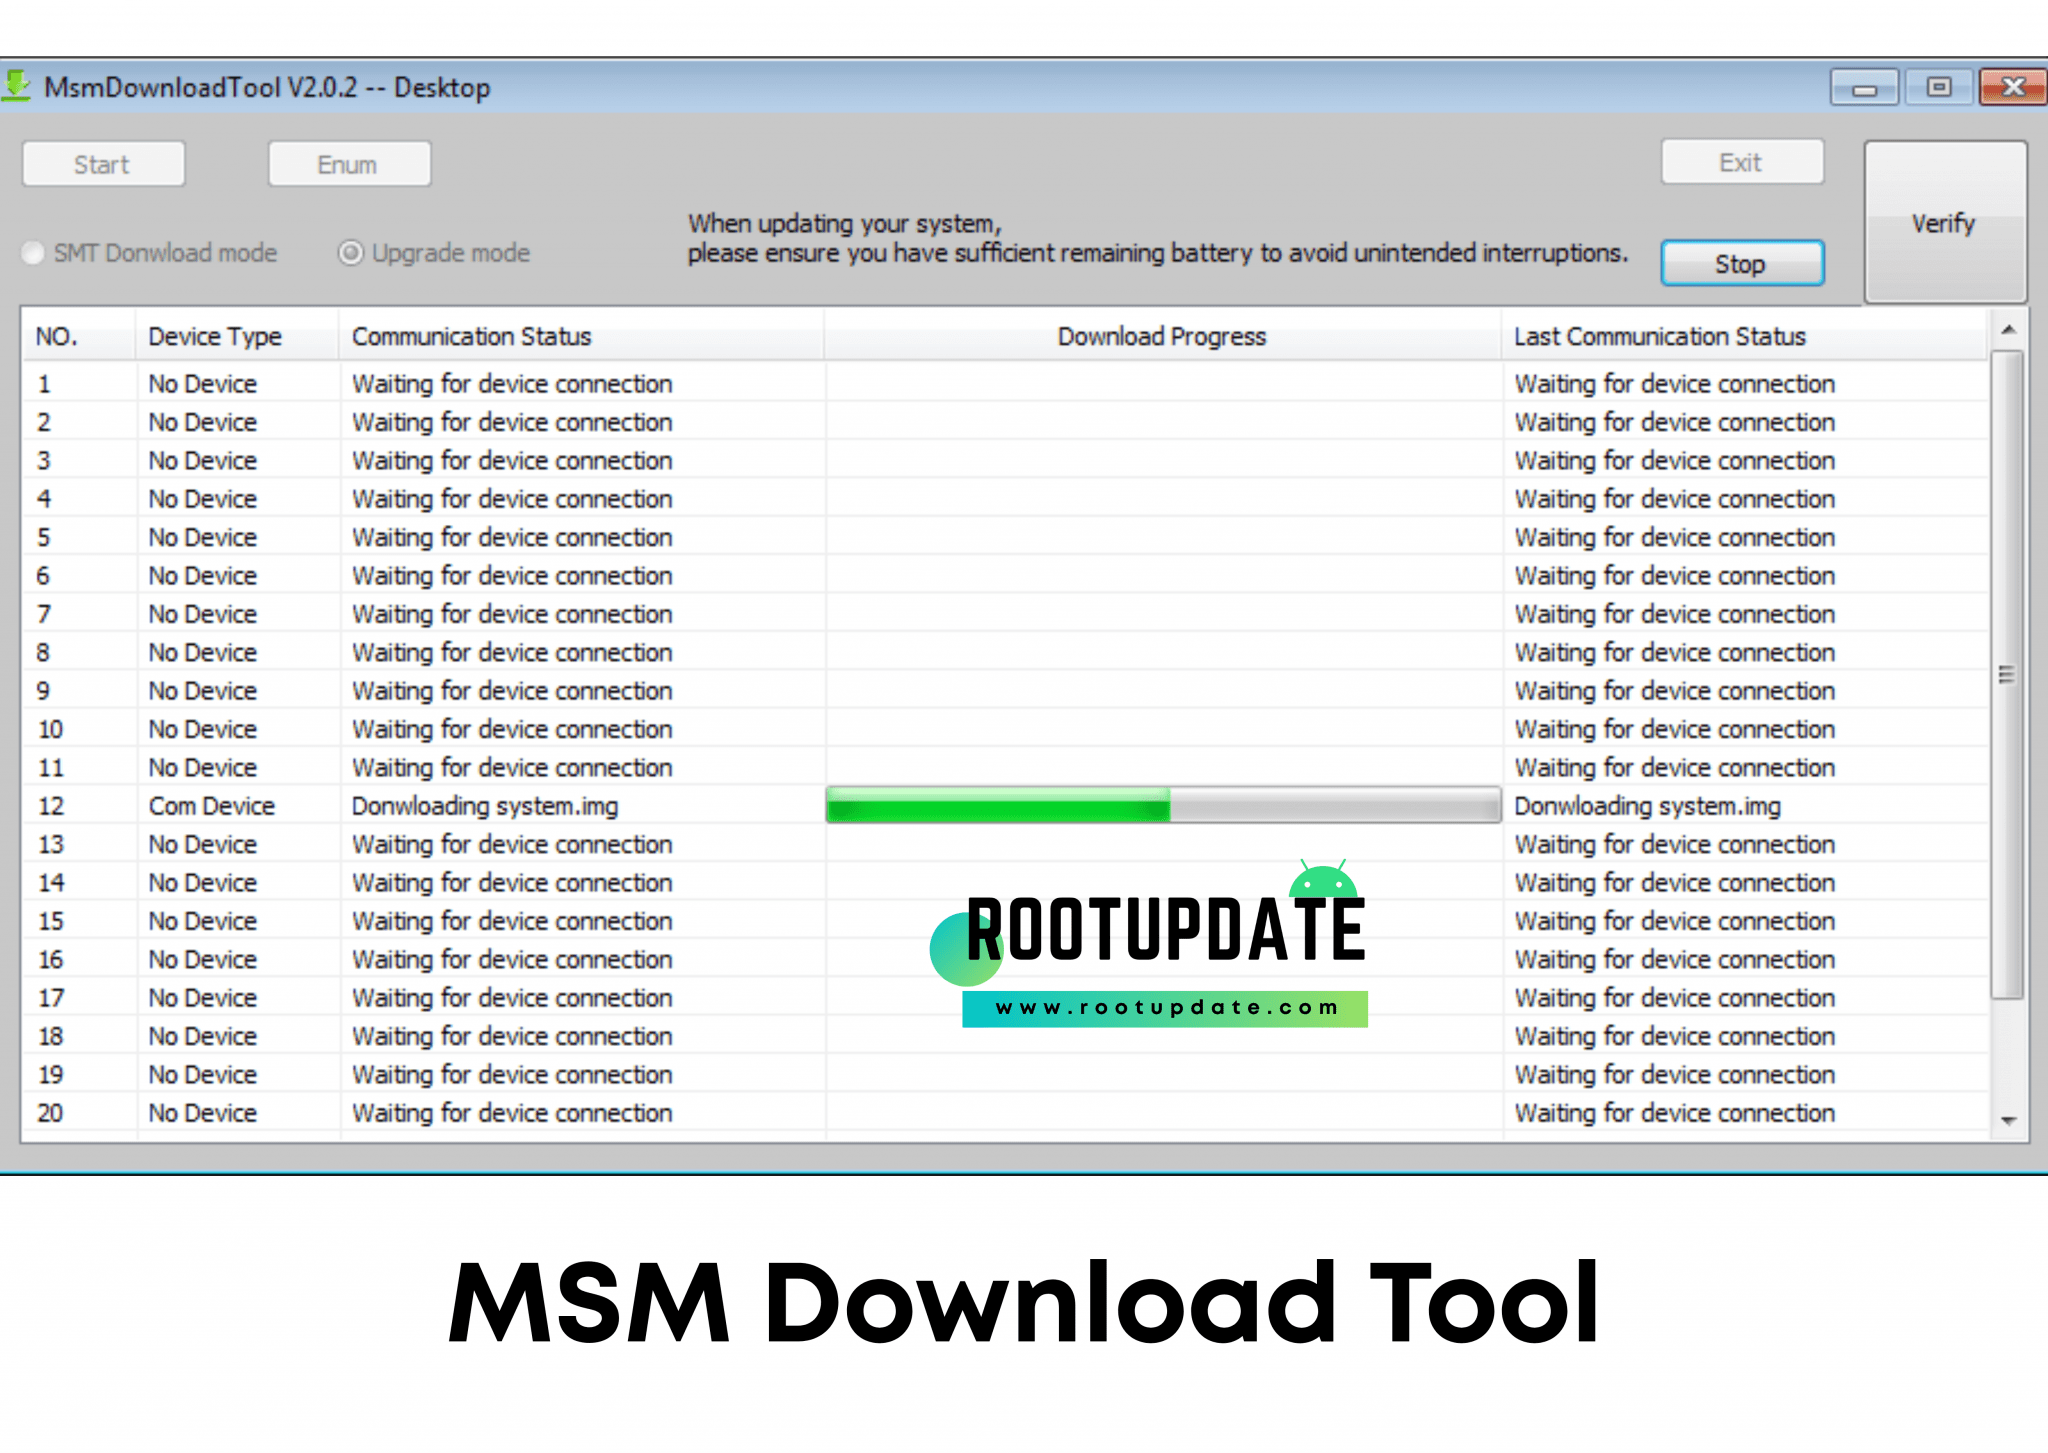 msm download tool buy online